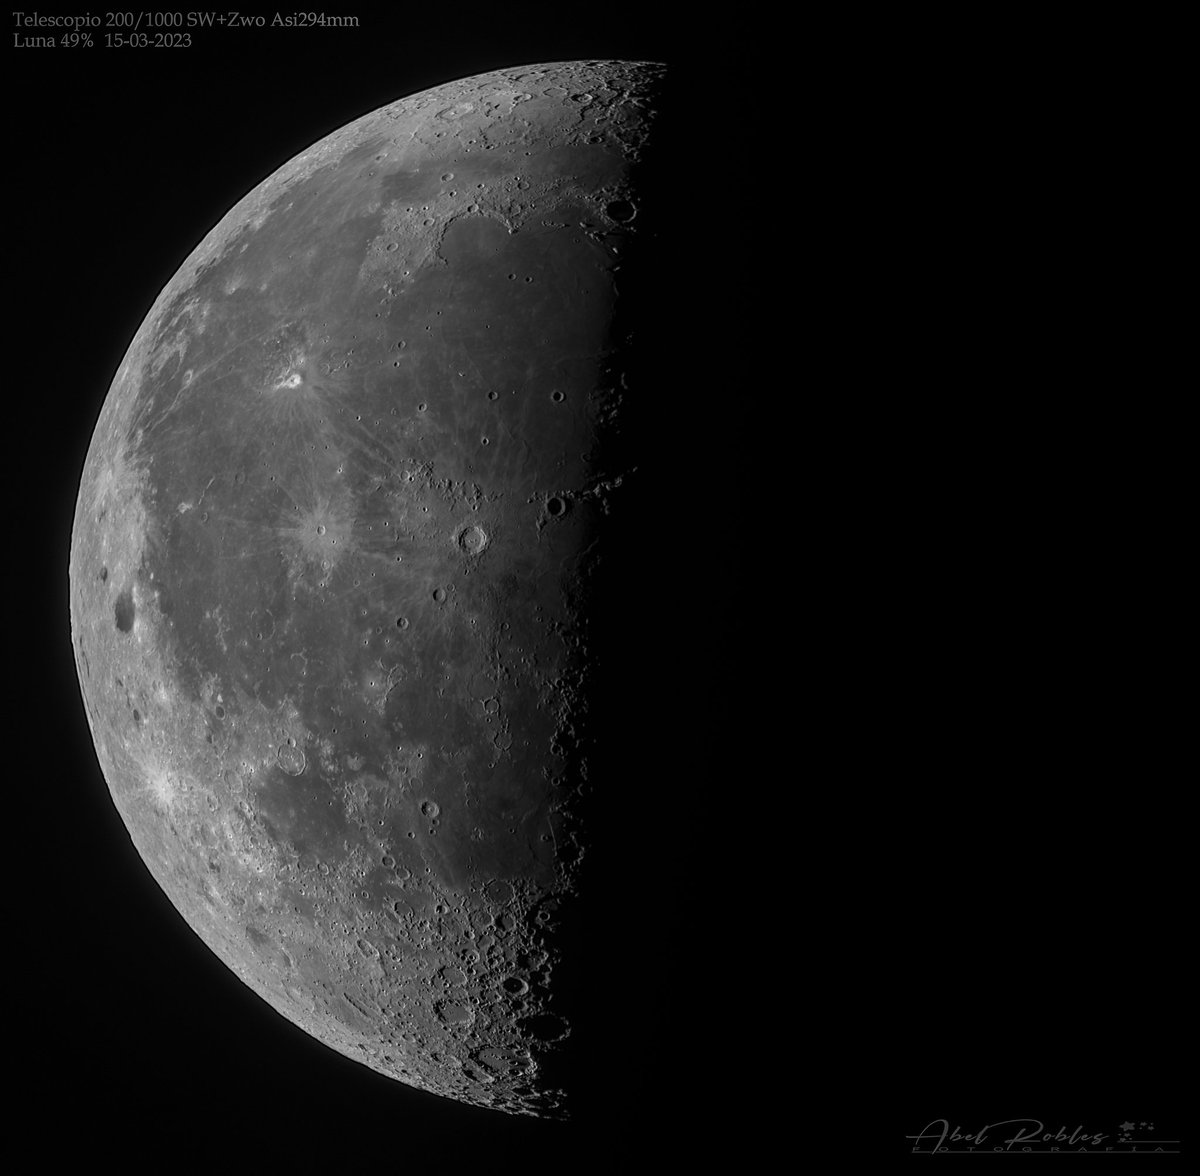 Luna iluminada al 50%, marcando el terminador
#cielosESA